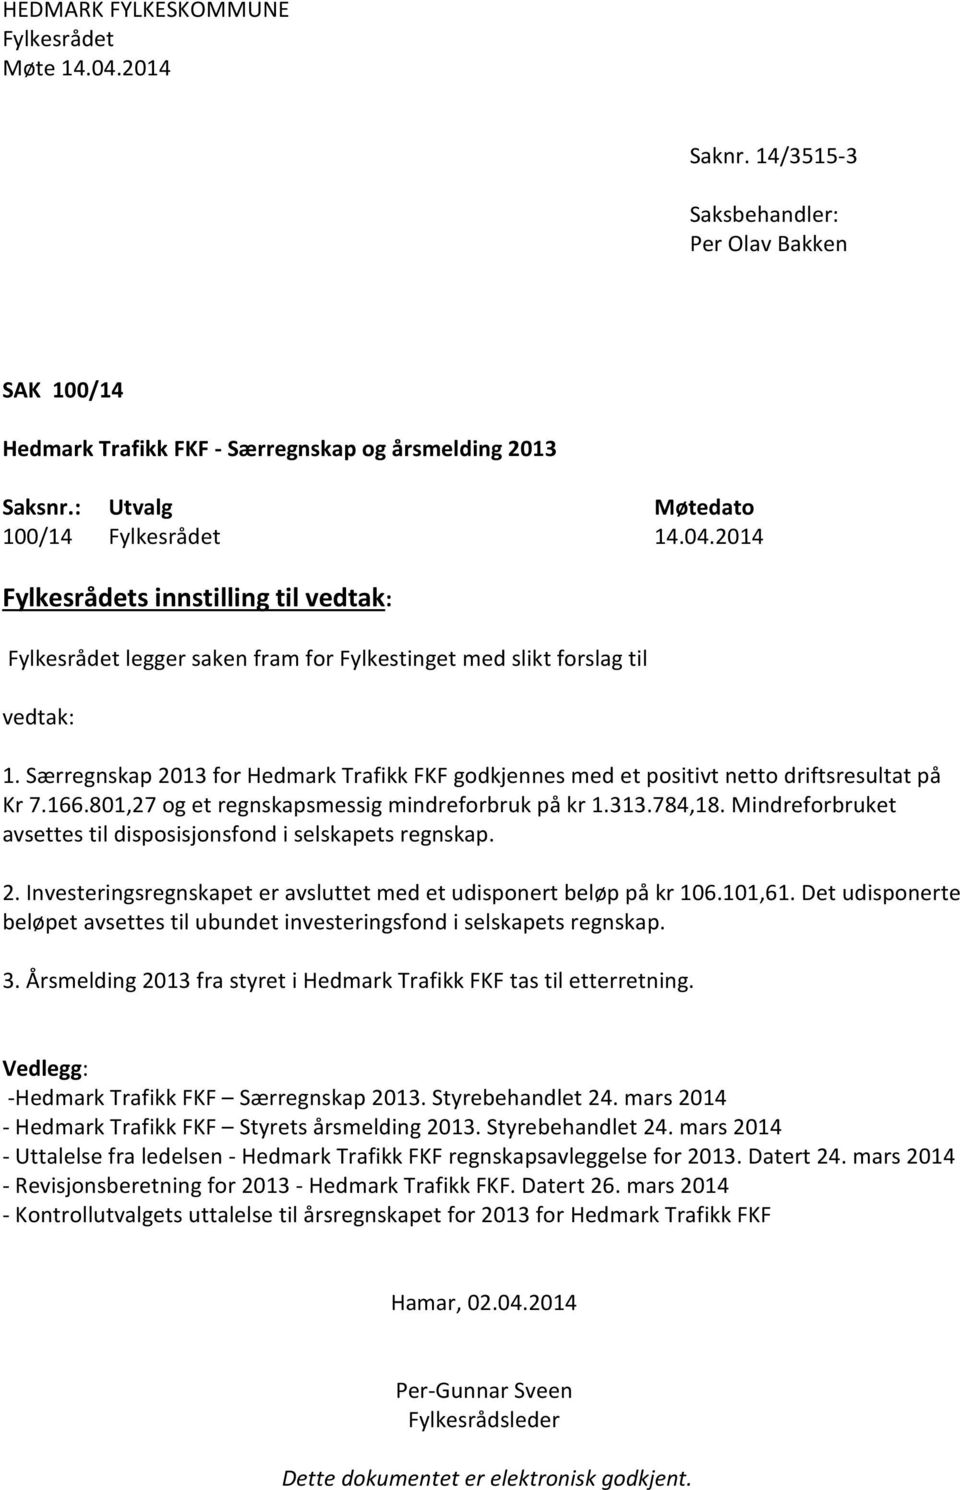 Særregnskap 2013 for Hedmark Trafikk FKF godkjennes med et positivt netto driftsresultat på Kr 7.166.801,27 og et regnskapsmessig mindreforbruk på kr 1.313.784,18.